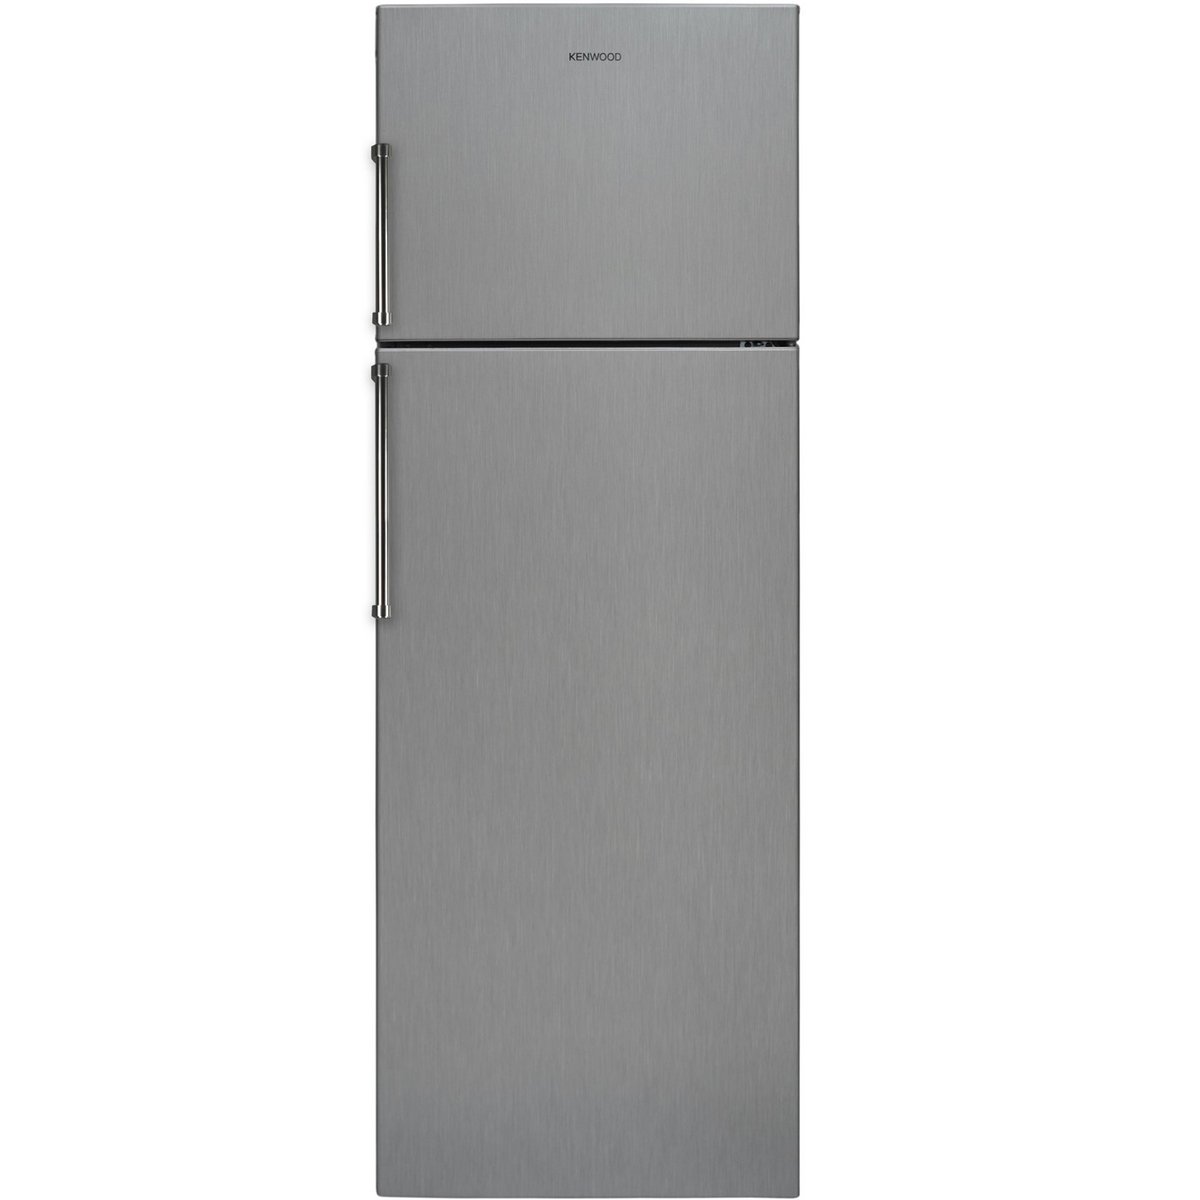 Kenwood Double Door Refrigerator KFFVB440NFSS 340Ltr